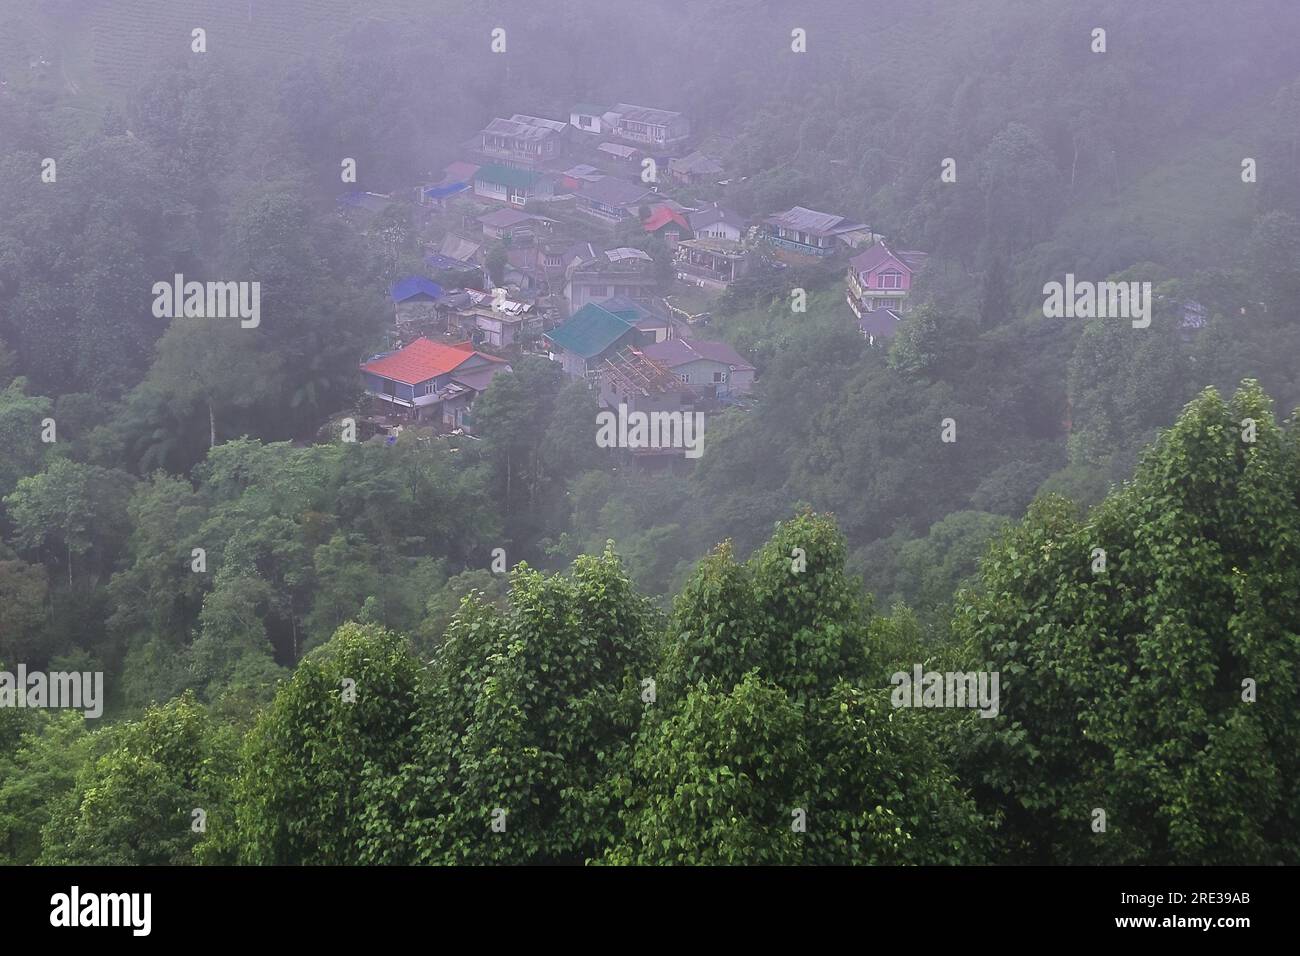 Panoramablick auf das neblige und bewölkte Bergdorf, umgeben von grünem Wald in der Monsunzeit, in der Nähe der darjeeling Hill Station in westbengalen in indien Stockfoto